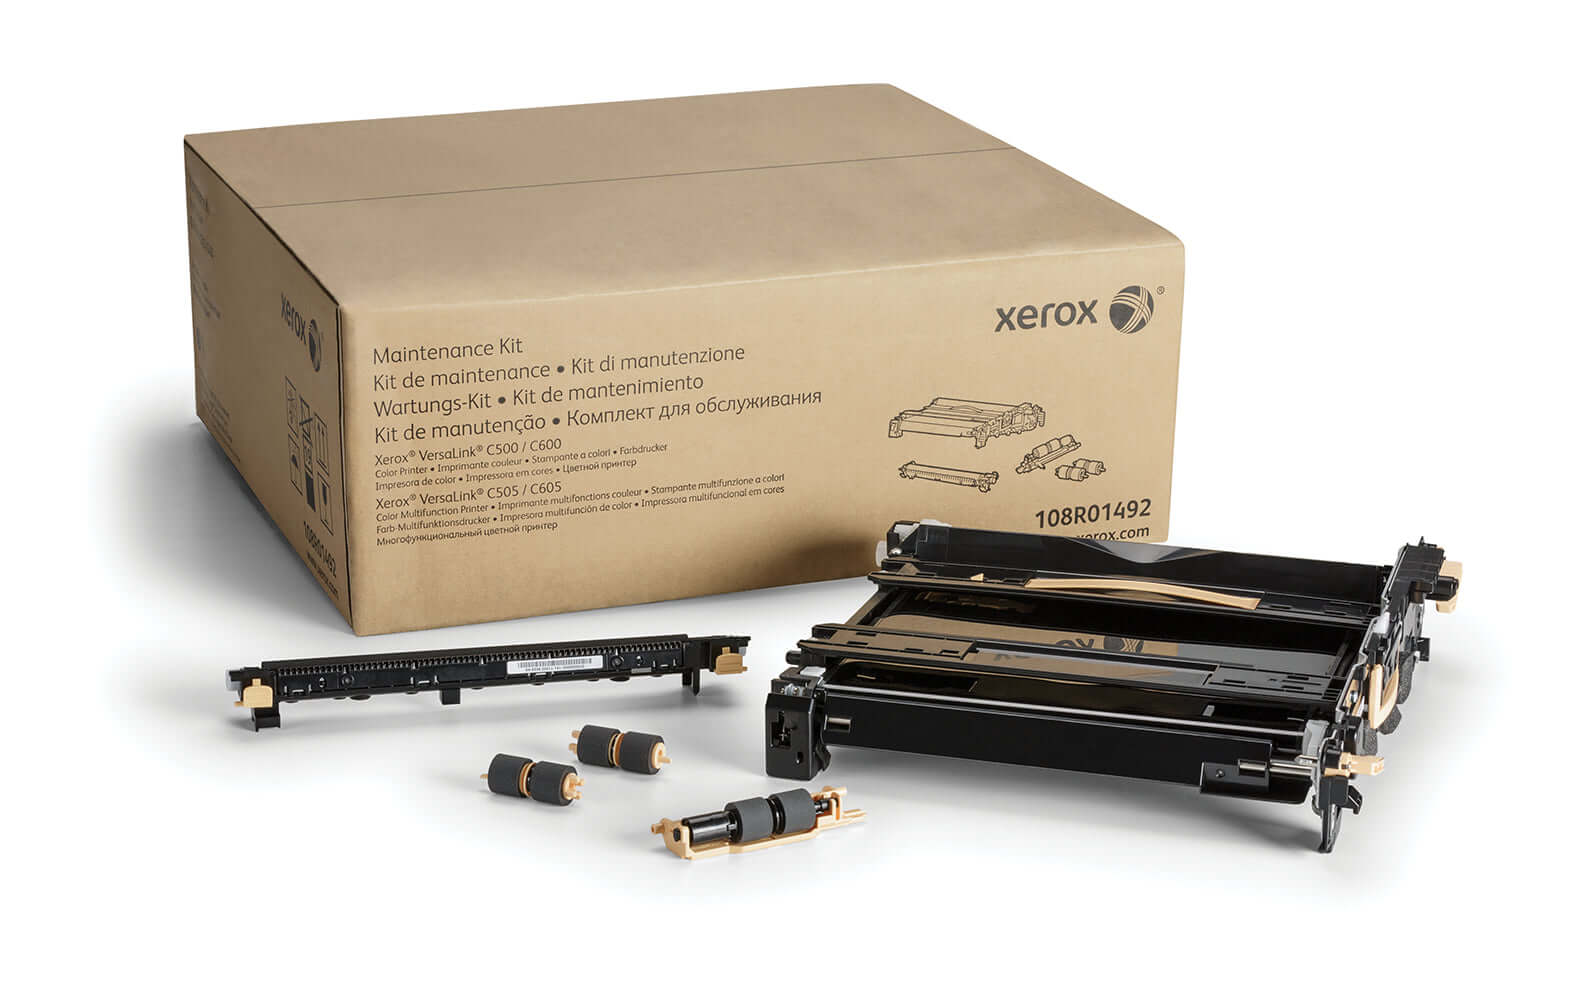 Xerox Maintenance Kit 108R01492 for VersaLink C500 / C505 / C600 / C605